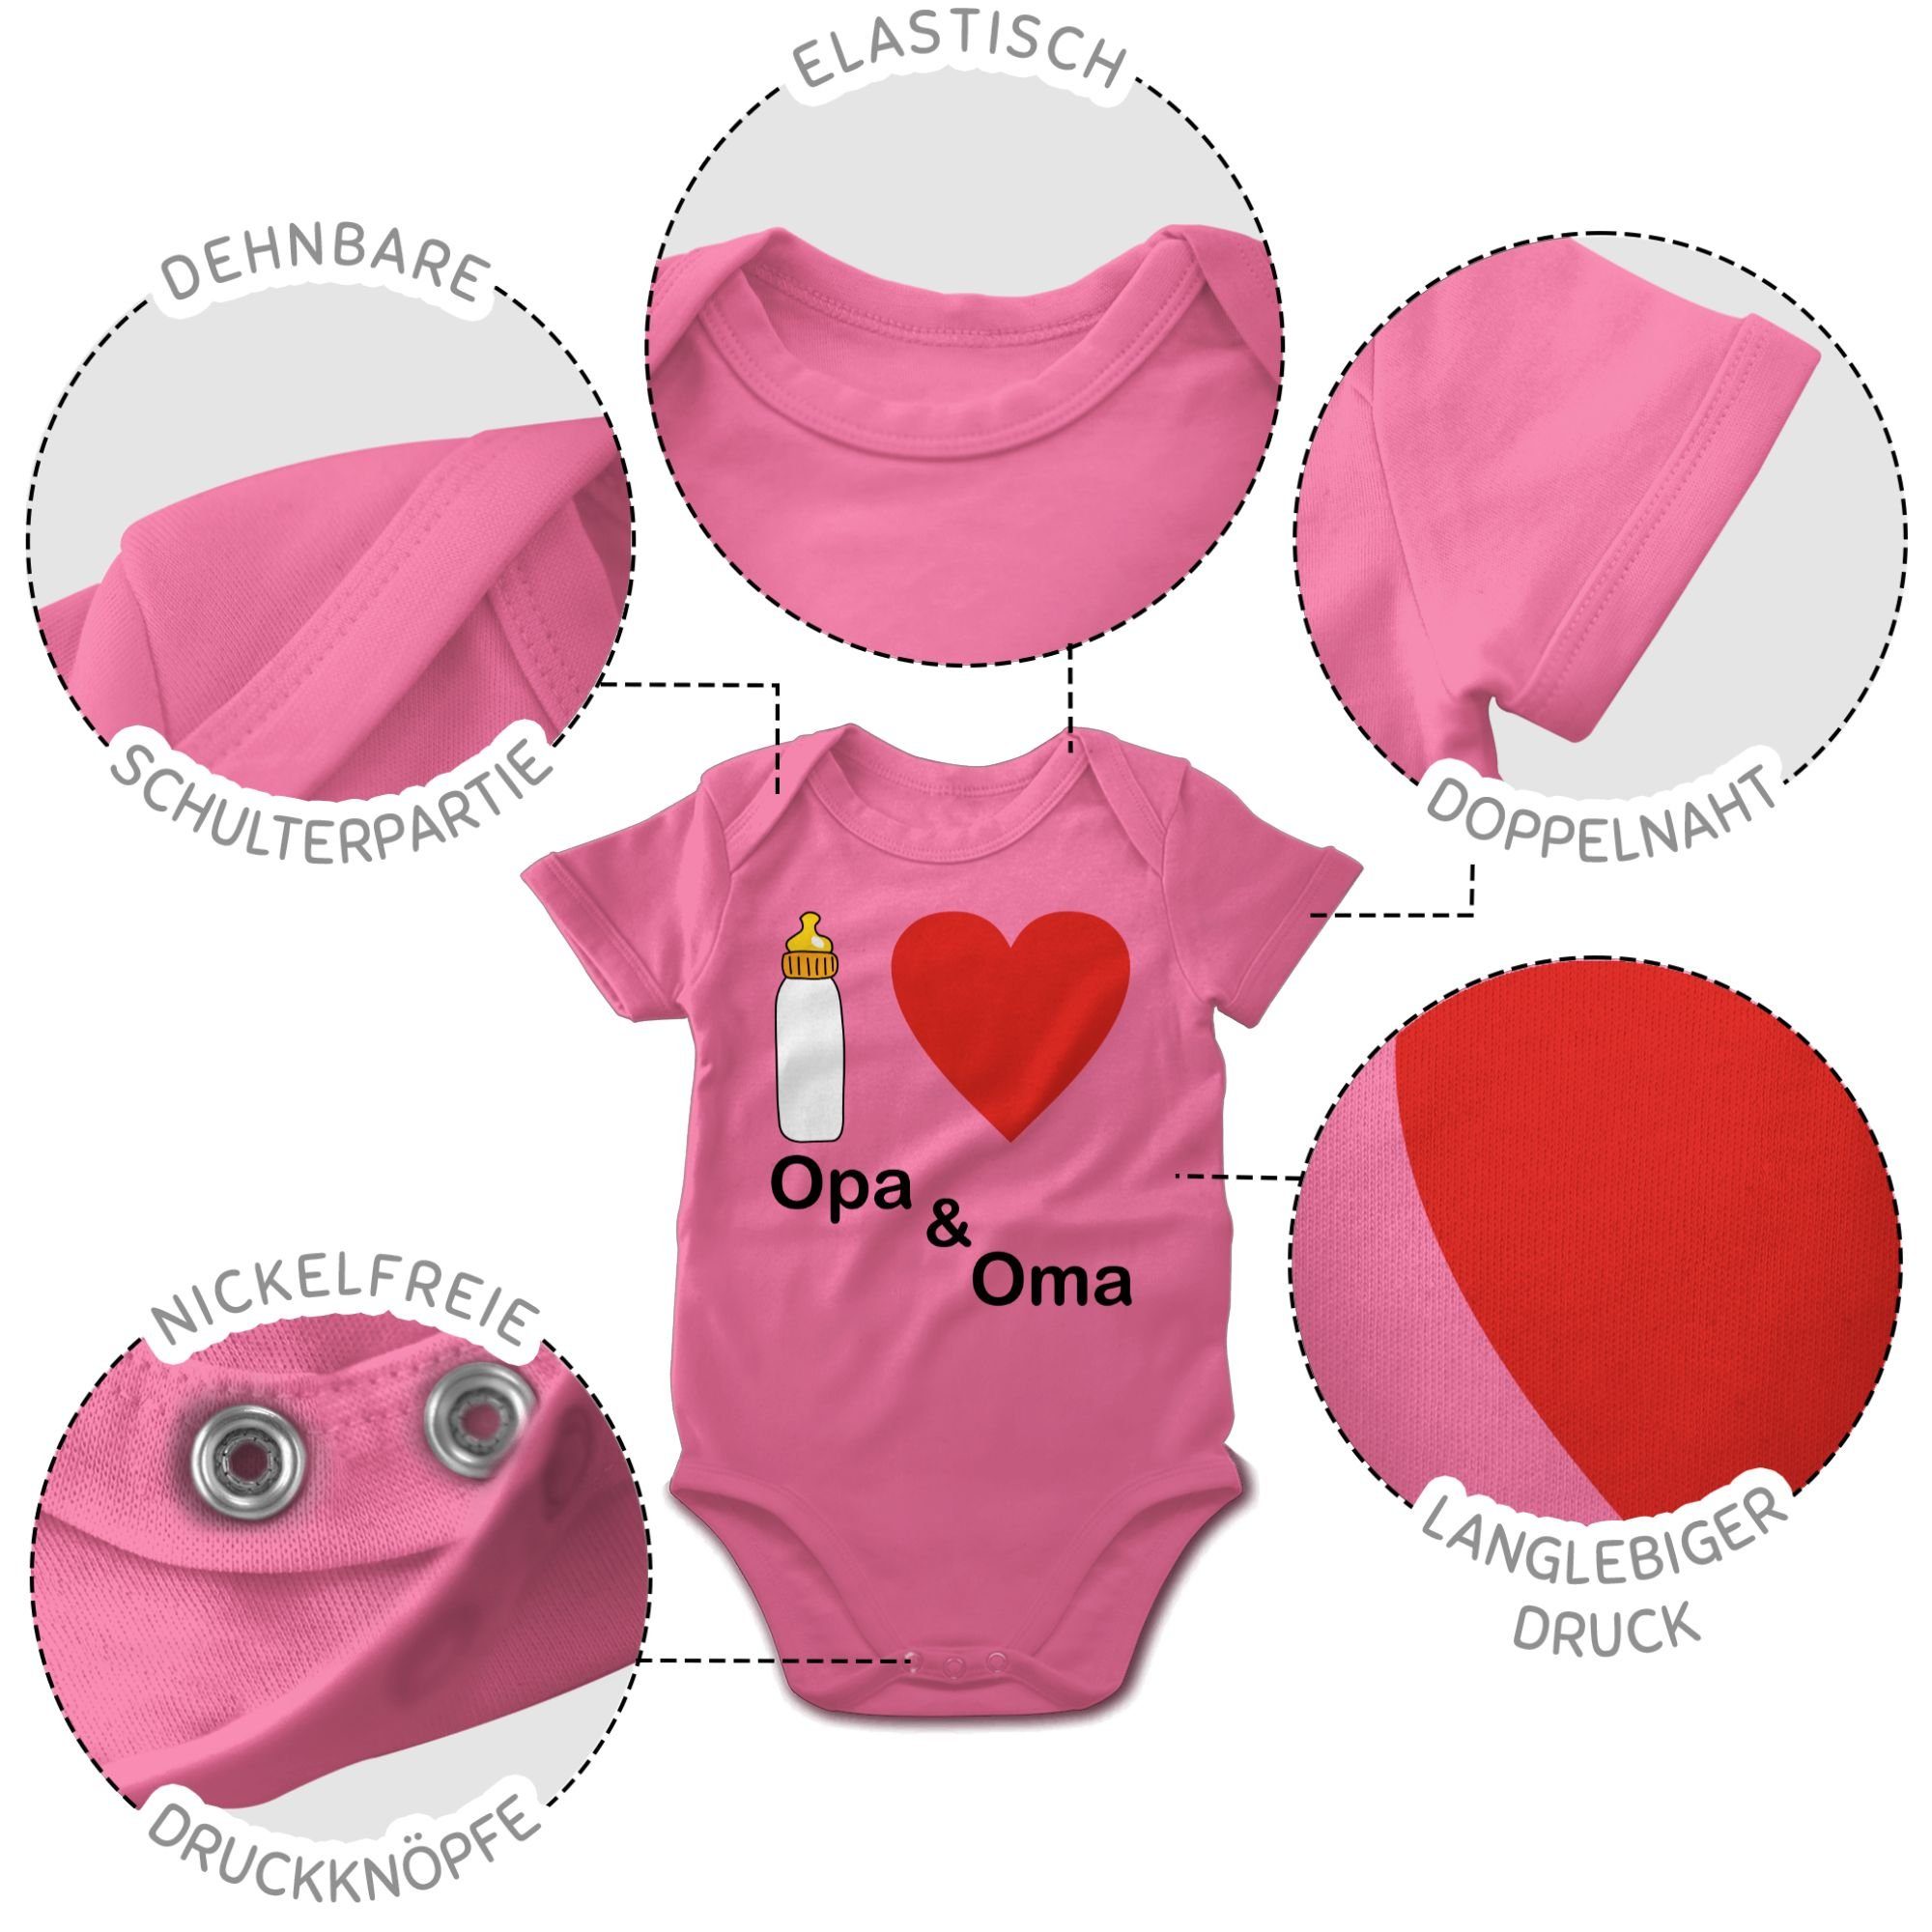 Opa und Shirtbody Nuckelflasche Baby Aktuelle Trends Shirtracer 3 Pink Oma love I